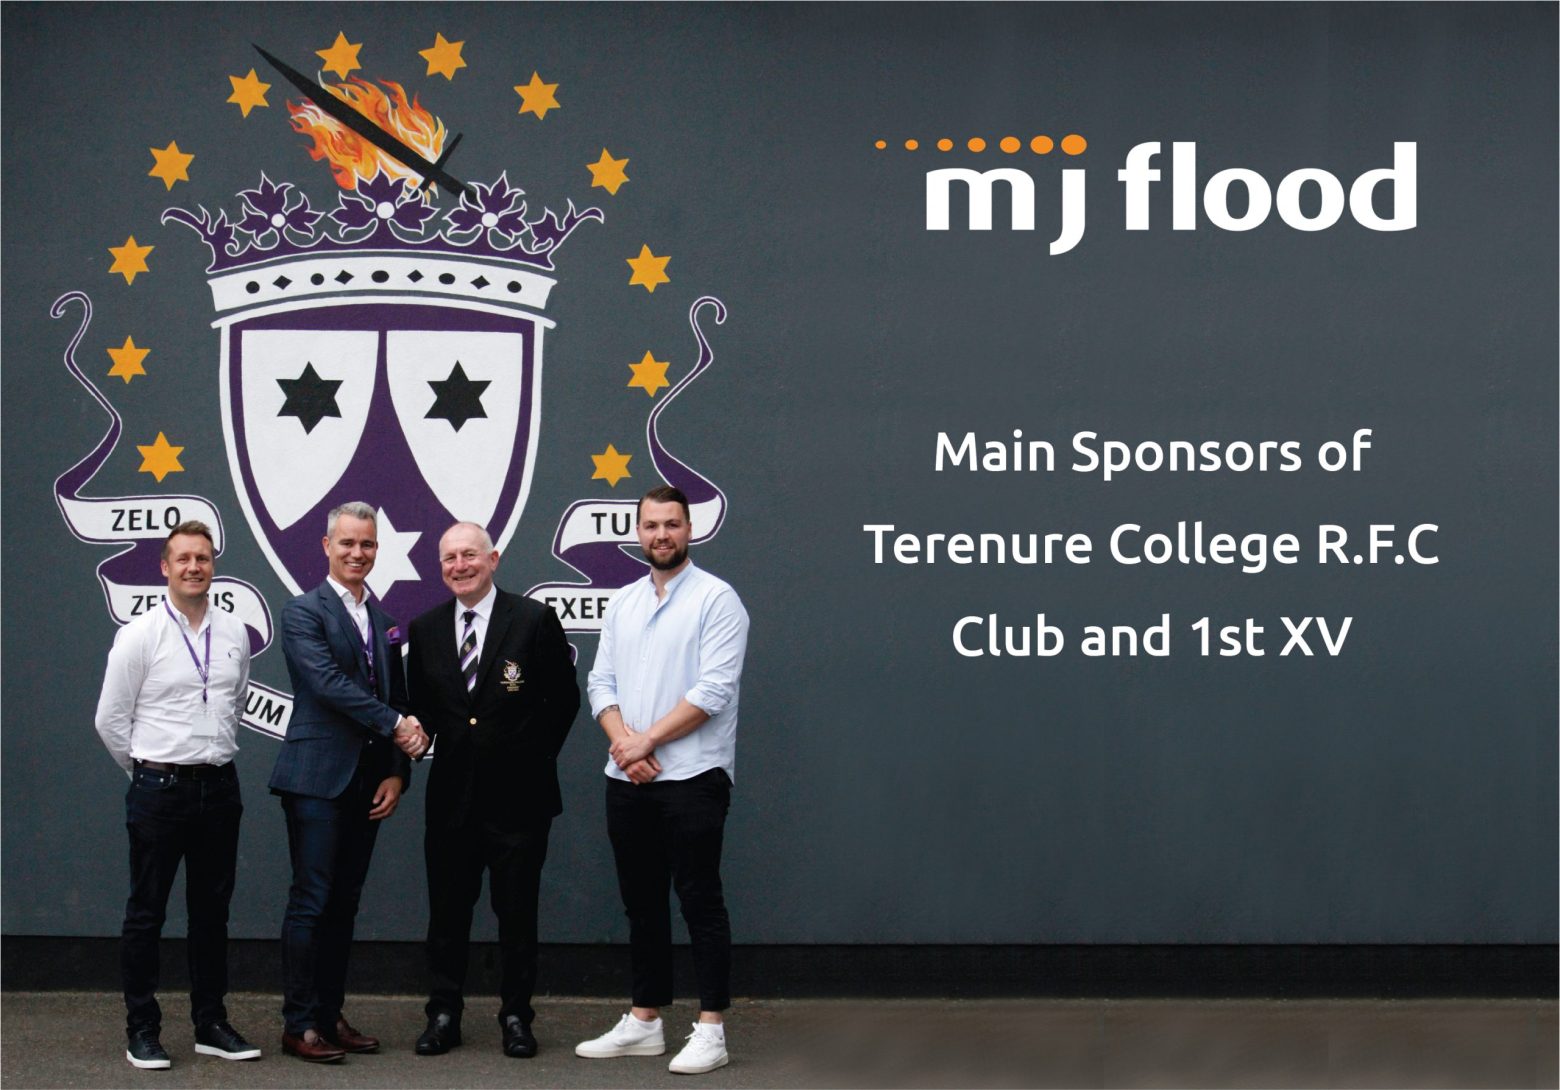 MJ Flood sponsoring Terenure College RFC